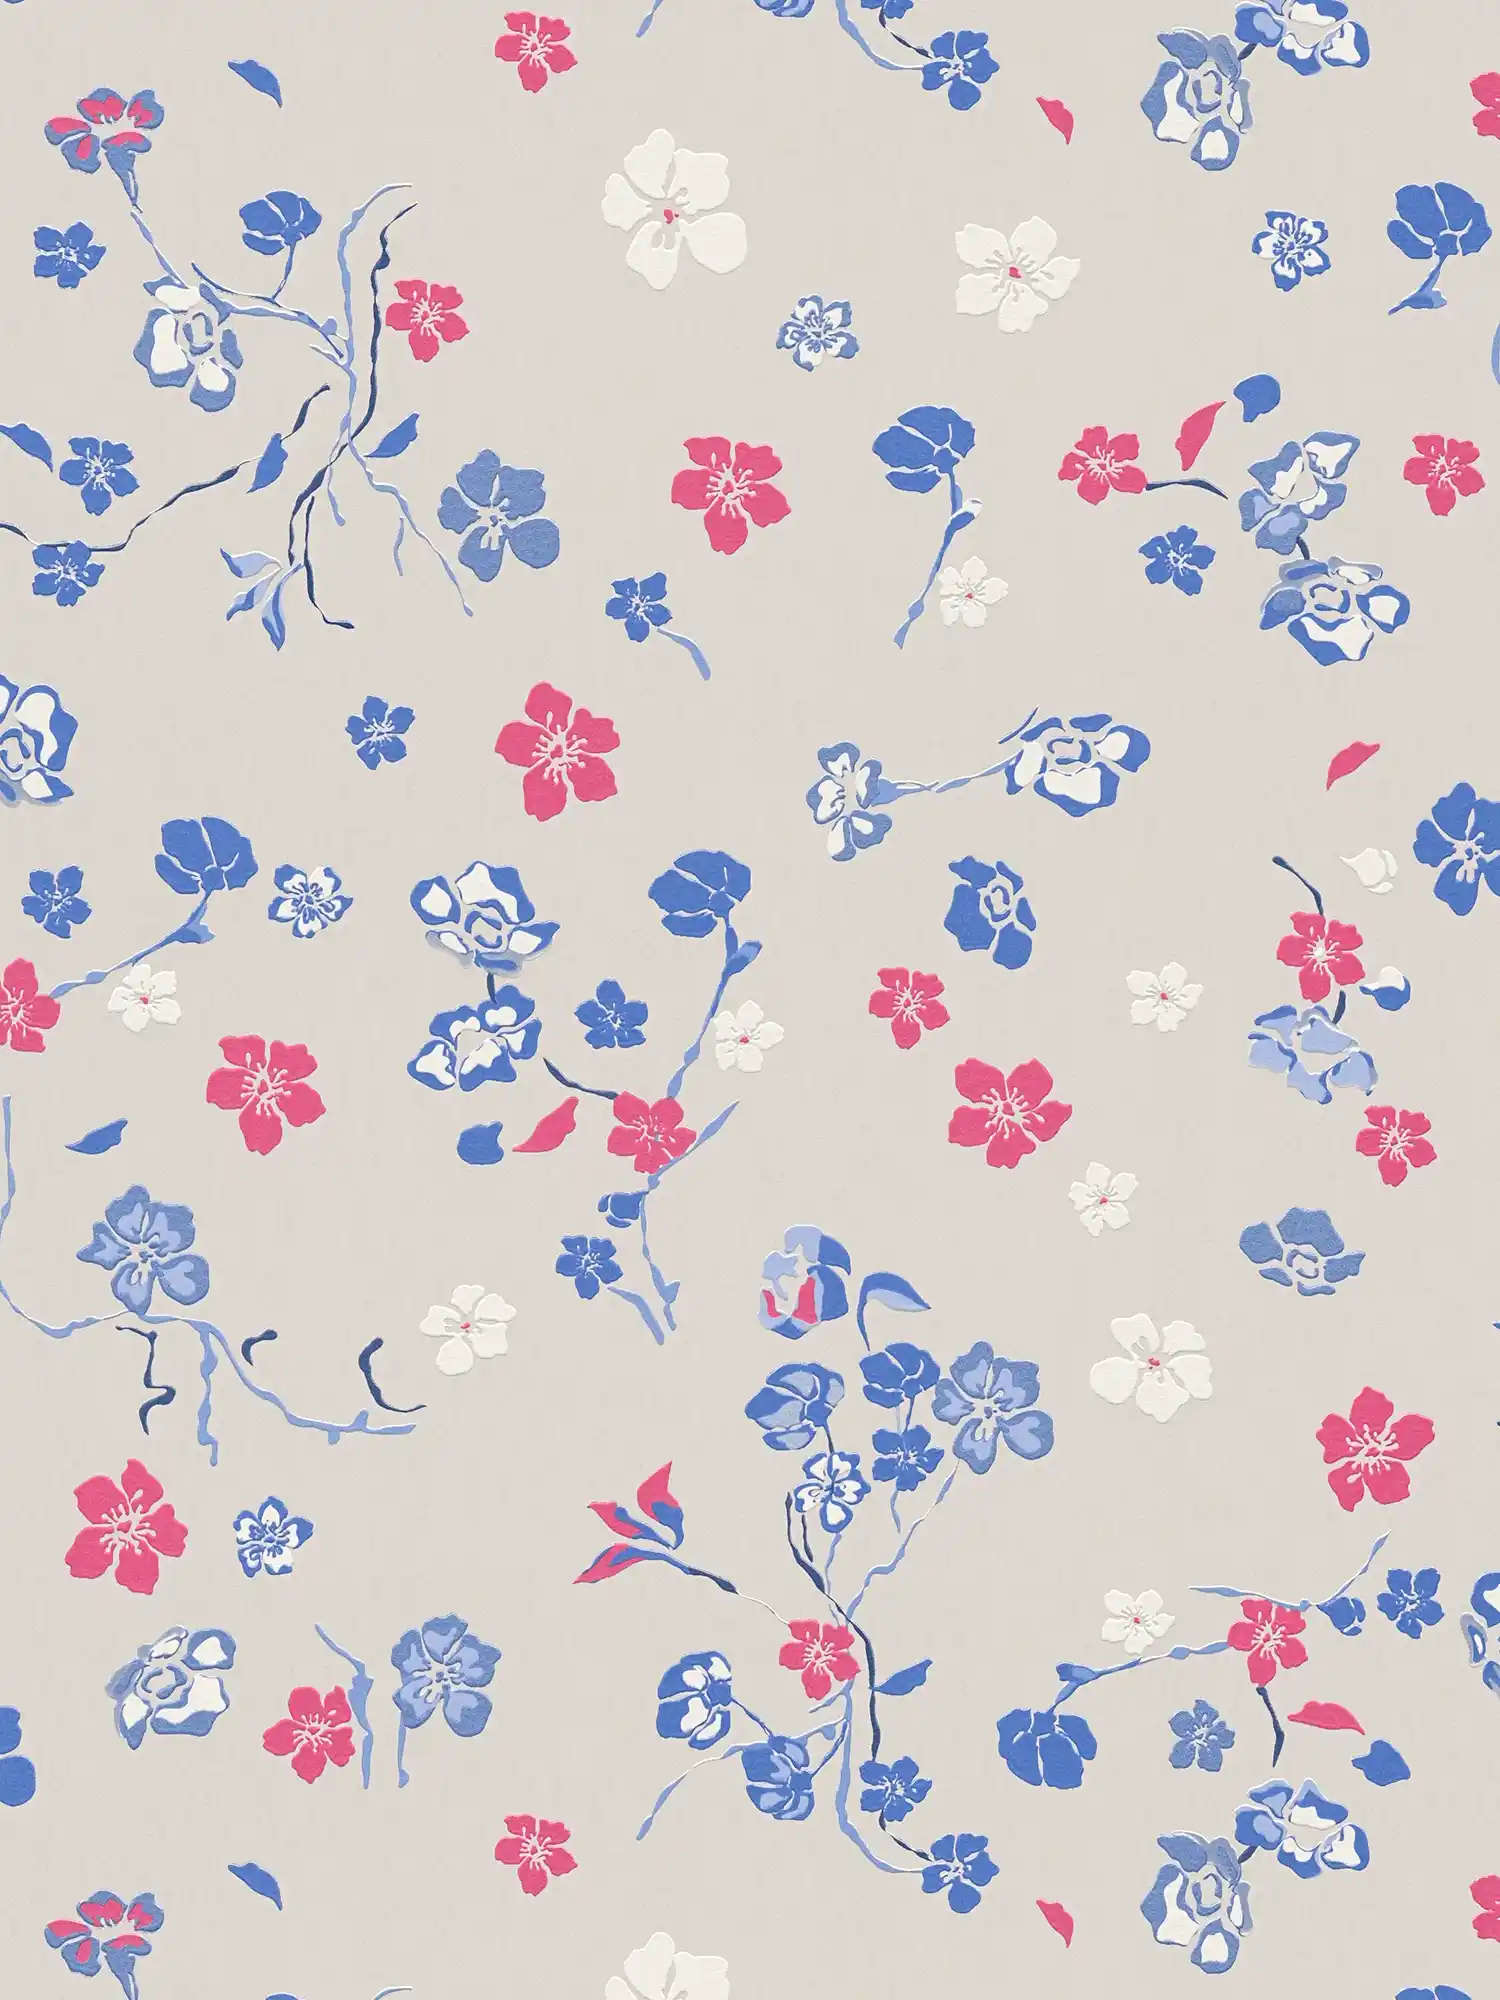 Vliesbehang met speels bloemenpatroon - lichtgrijs, blauw, roze
